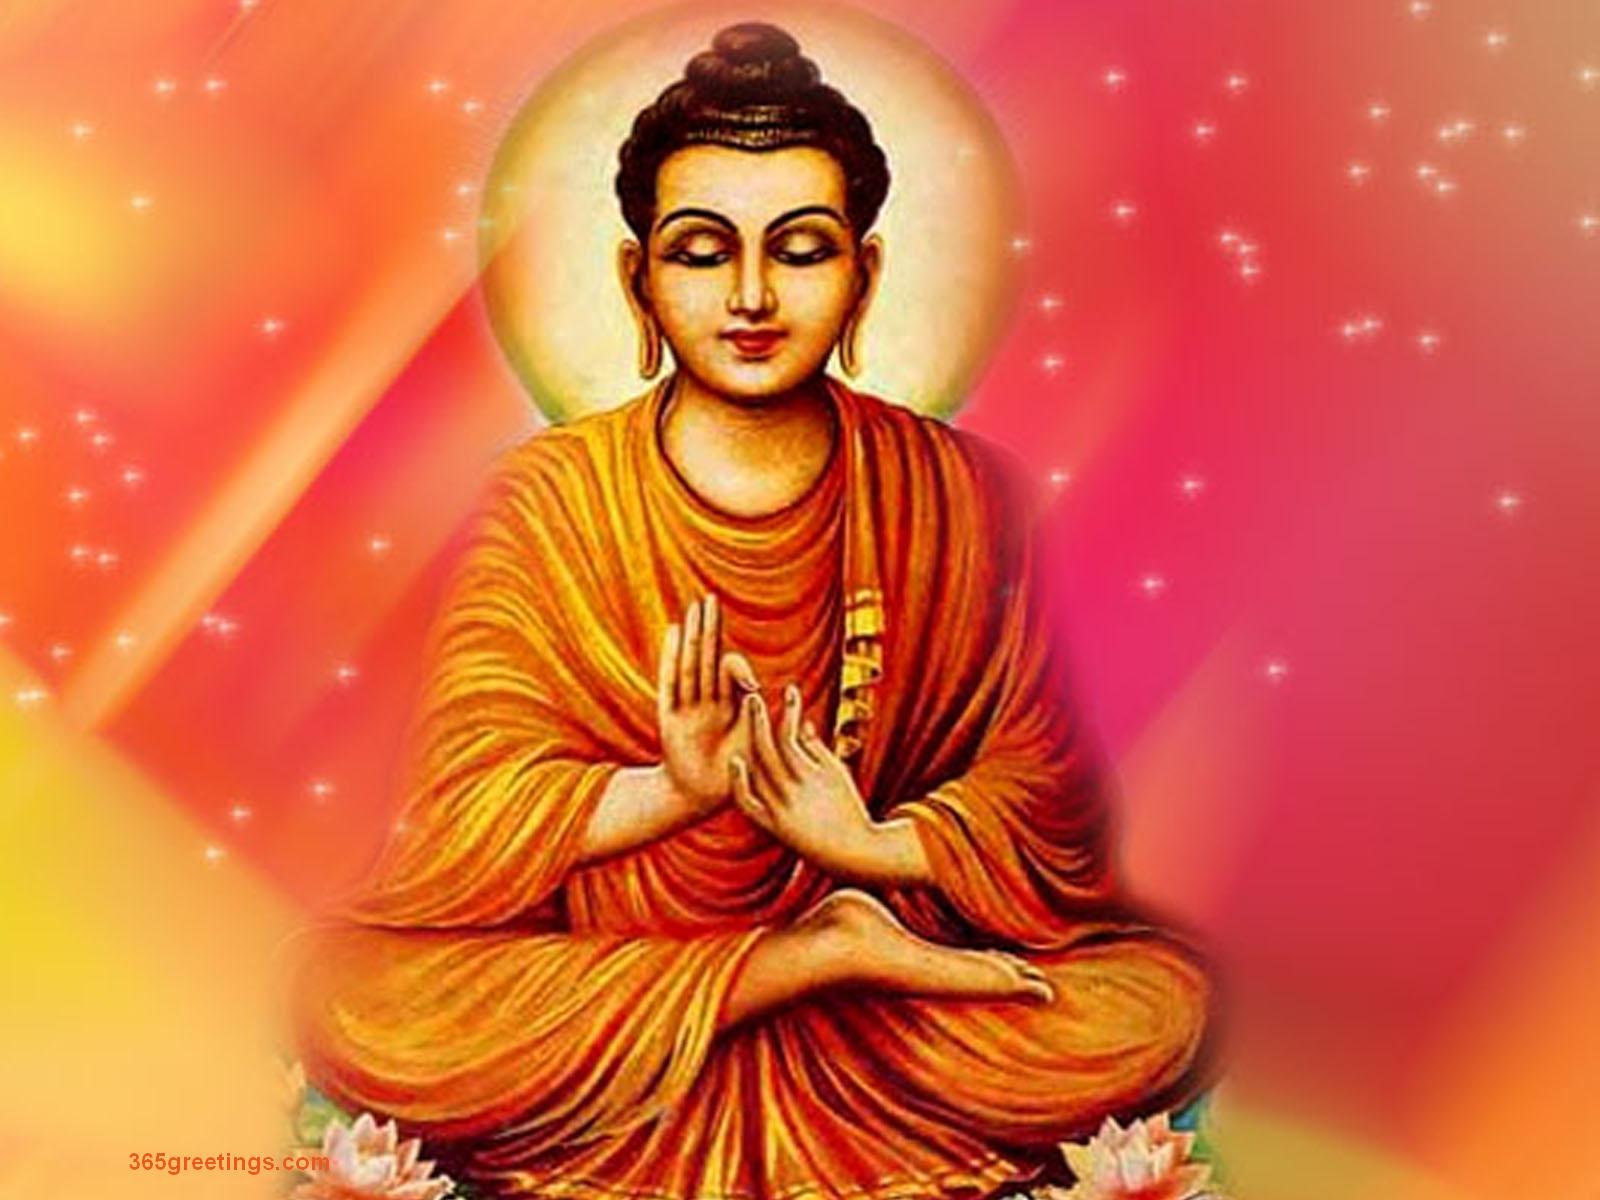 Đại Thánh Văn Thù Sư Lợi Bồ Tát Tán Phật Pháp Thân Lễ - Pháp Bảo Phật Giáo